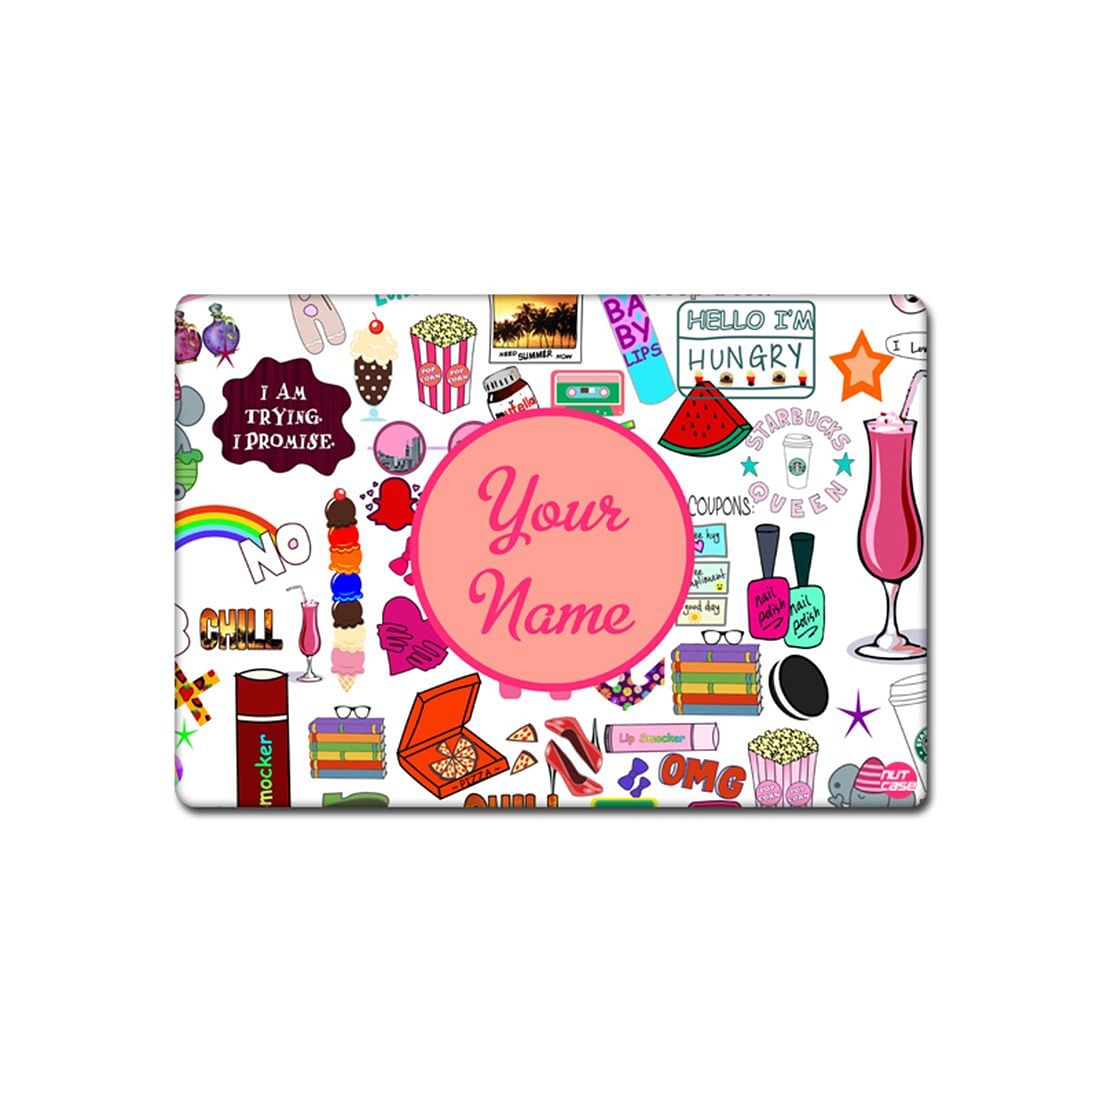 Custom Dinner Placemats for Girl Birthday Return Gift Ideas - Girly Nutcase